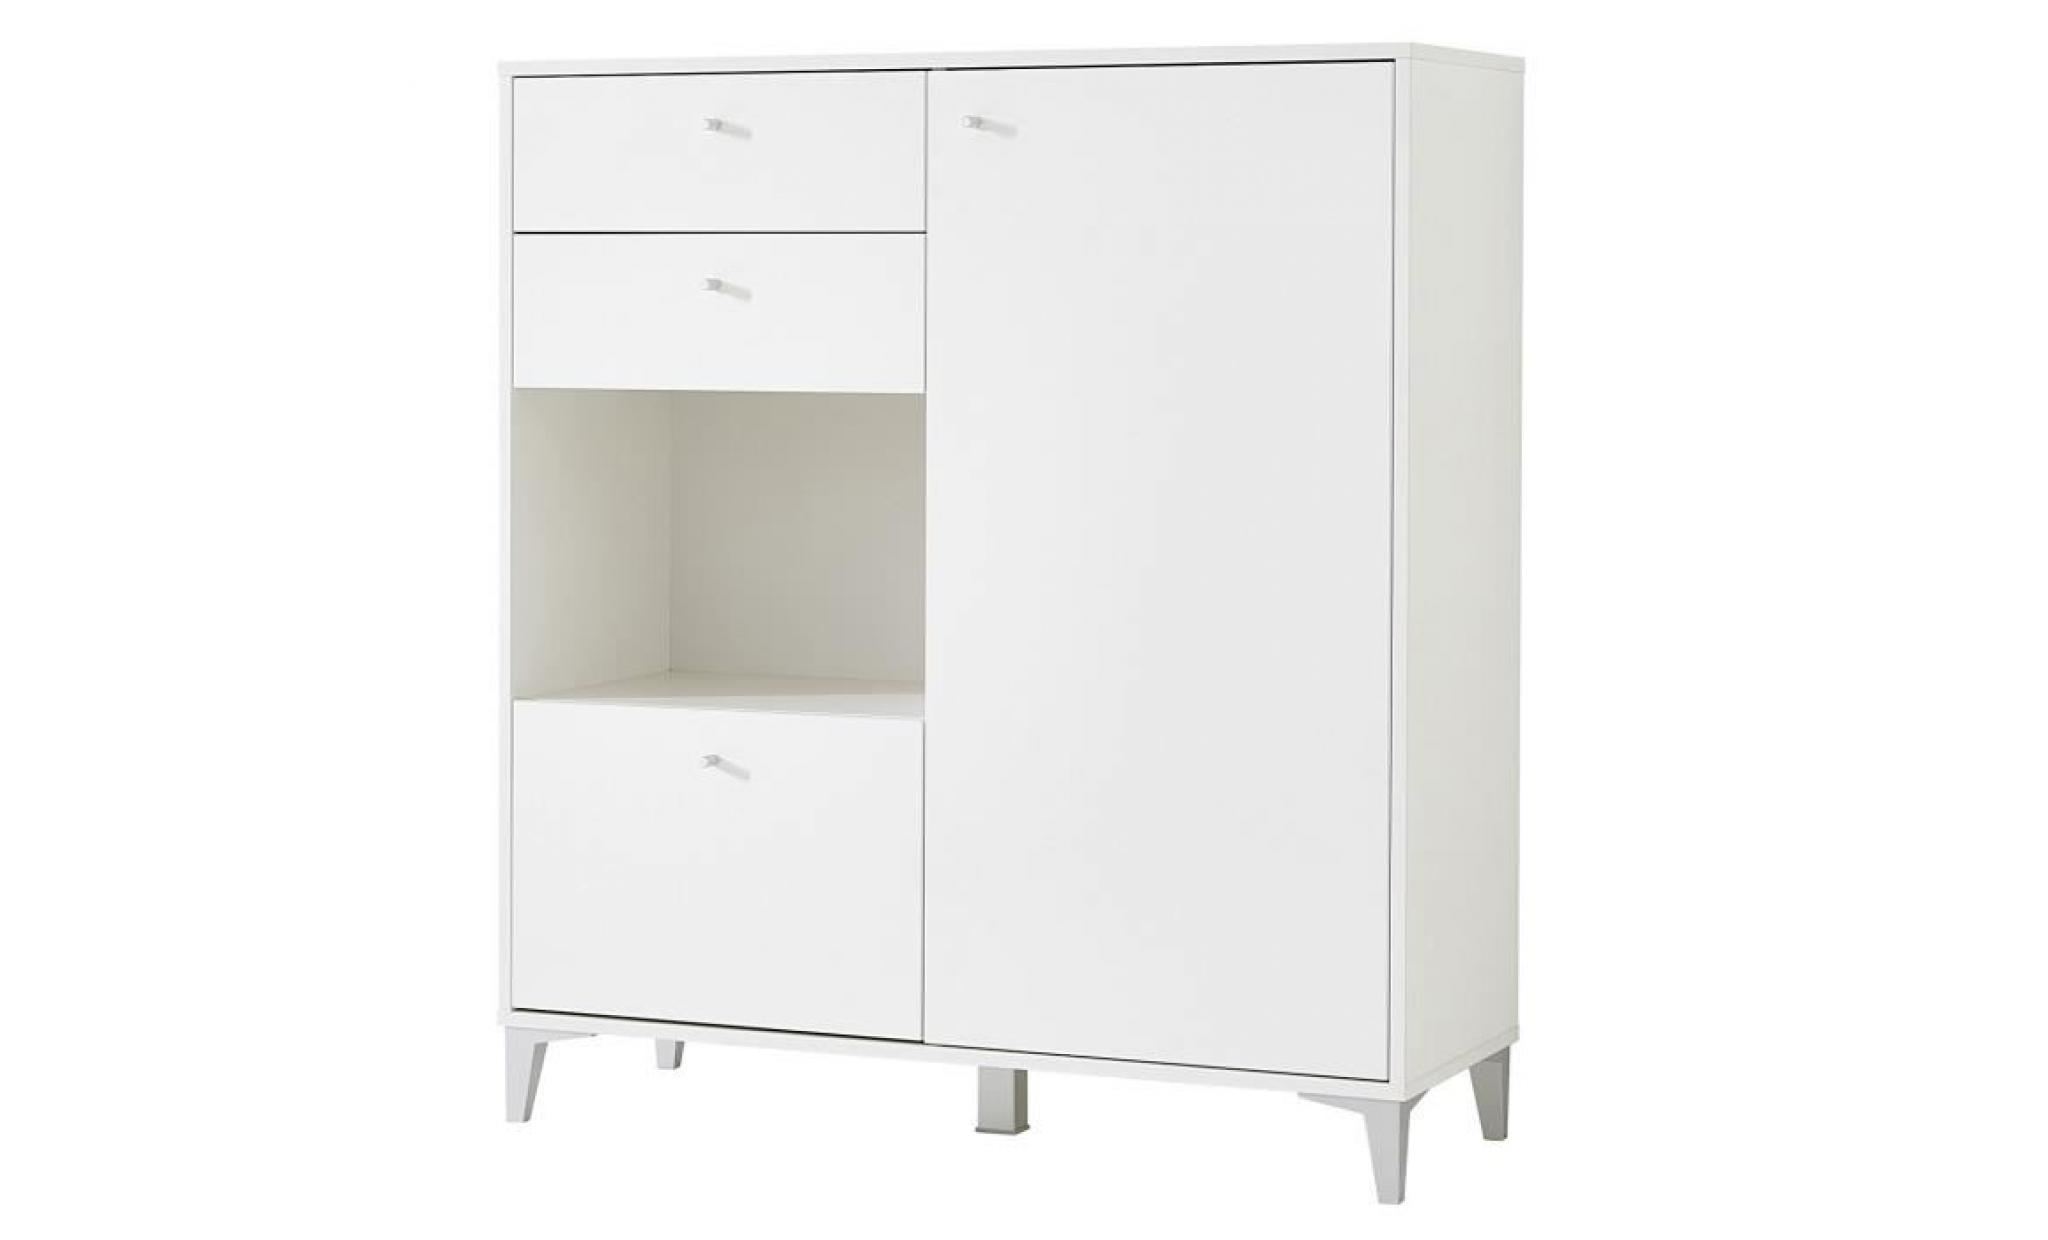 armoire meuble à chauusures en bois couleur blanche   dim : l96 x h105 x p40 cm